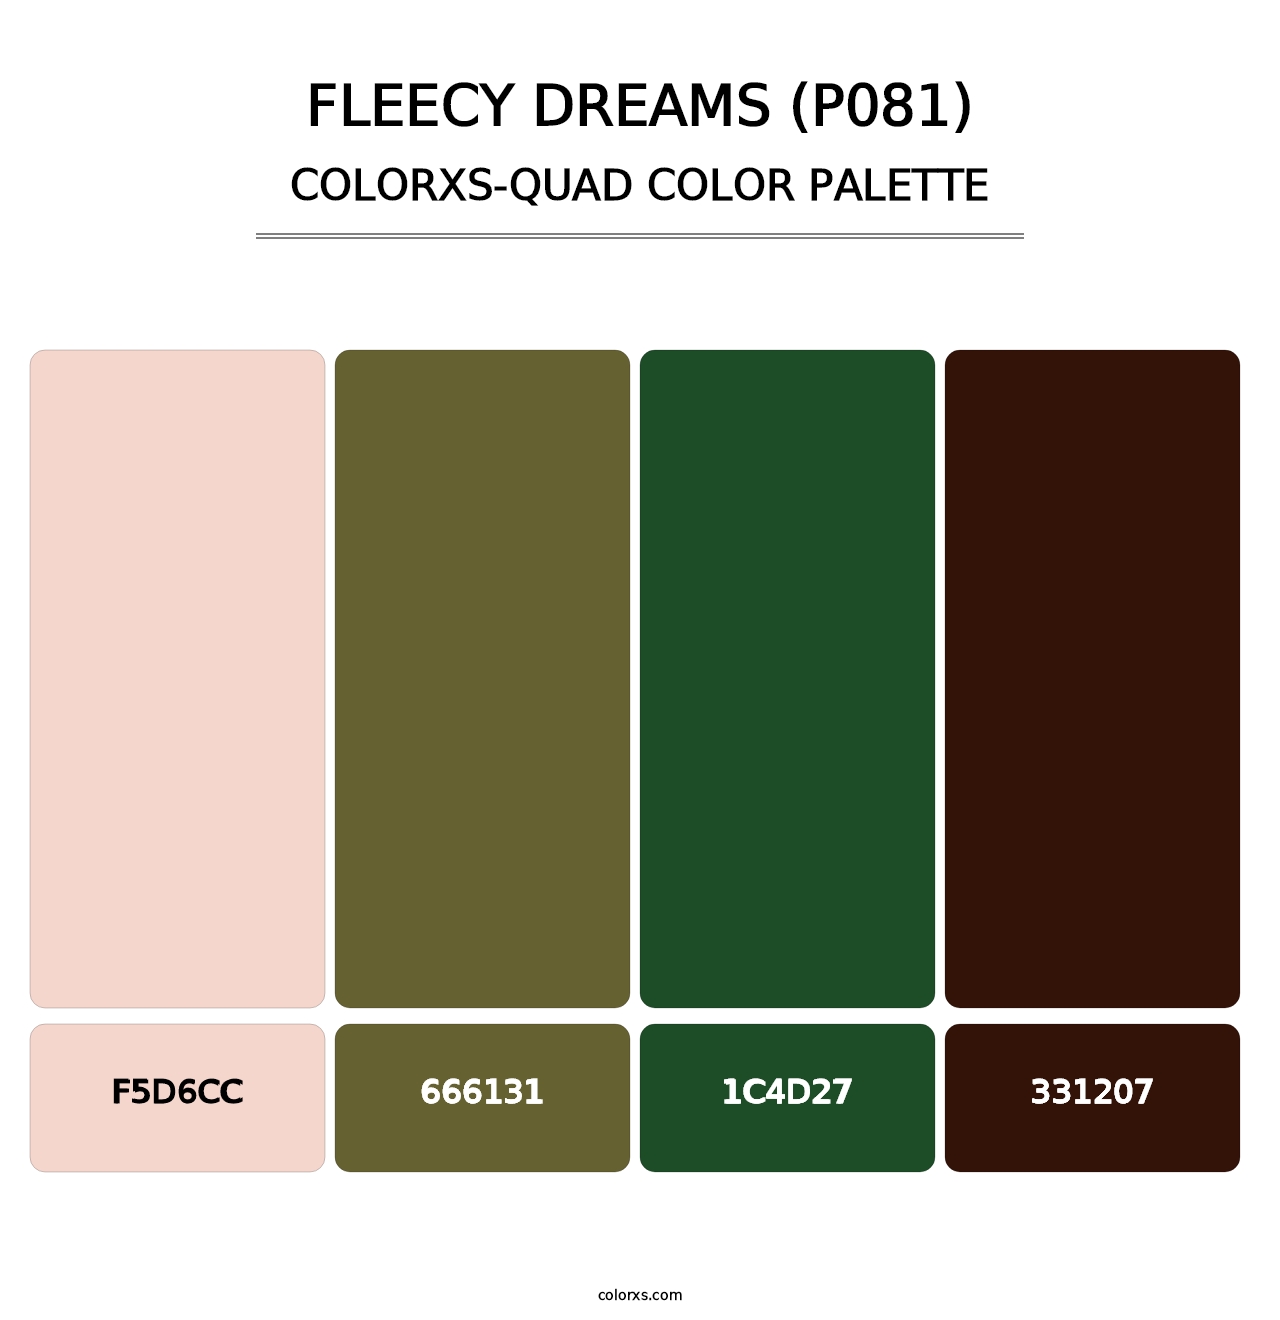 Fleecy Dreams (P081) - Colorxs Quad Palette